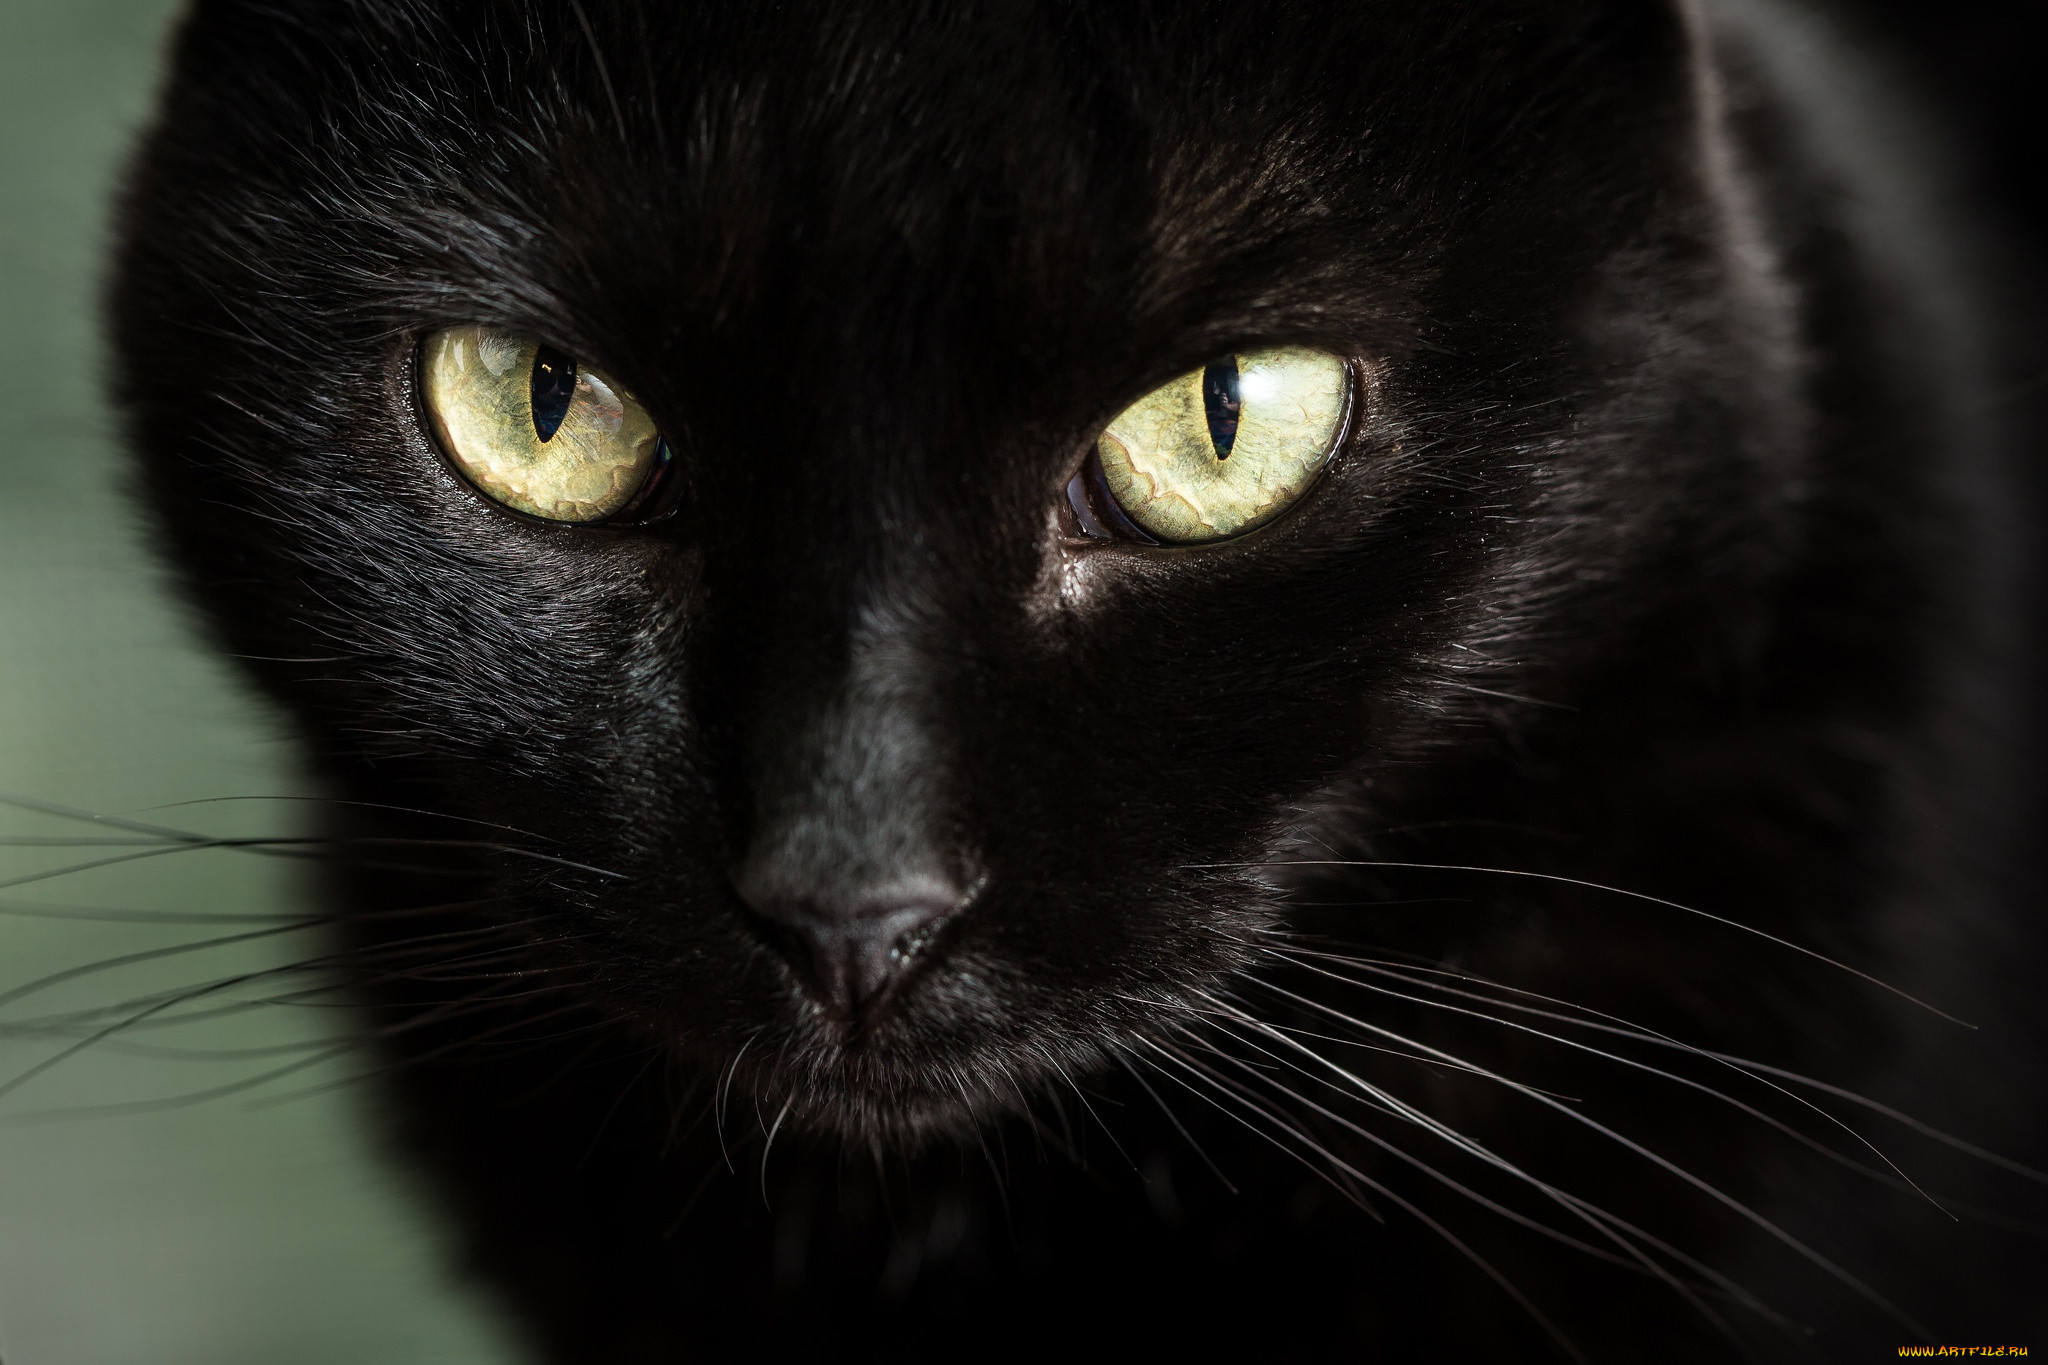 Черная картинка. Чёрный кот. Красивый черный кот. Чёрные коты с жёлтыми глазами. Черная кошка с желтыми глазами.